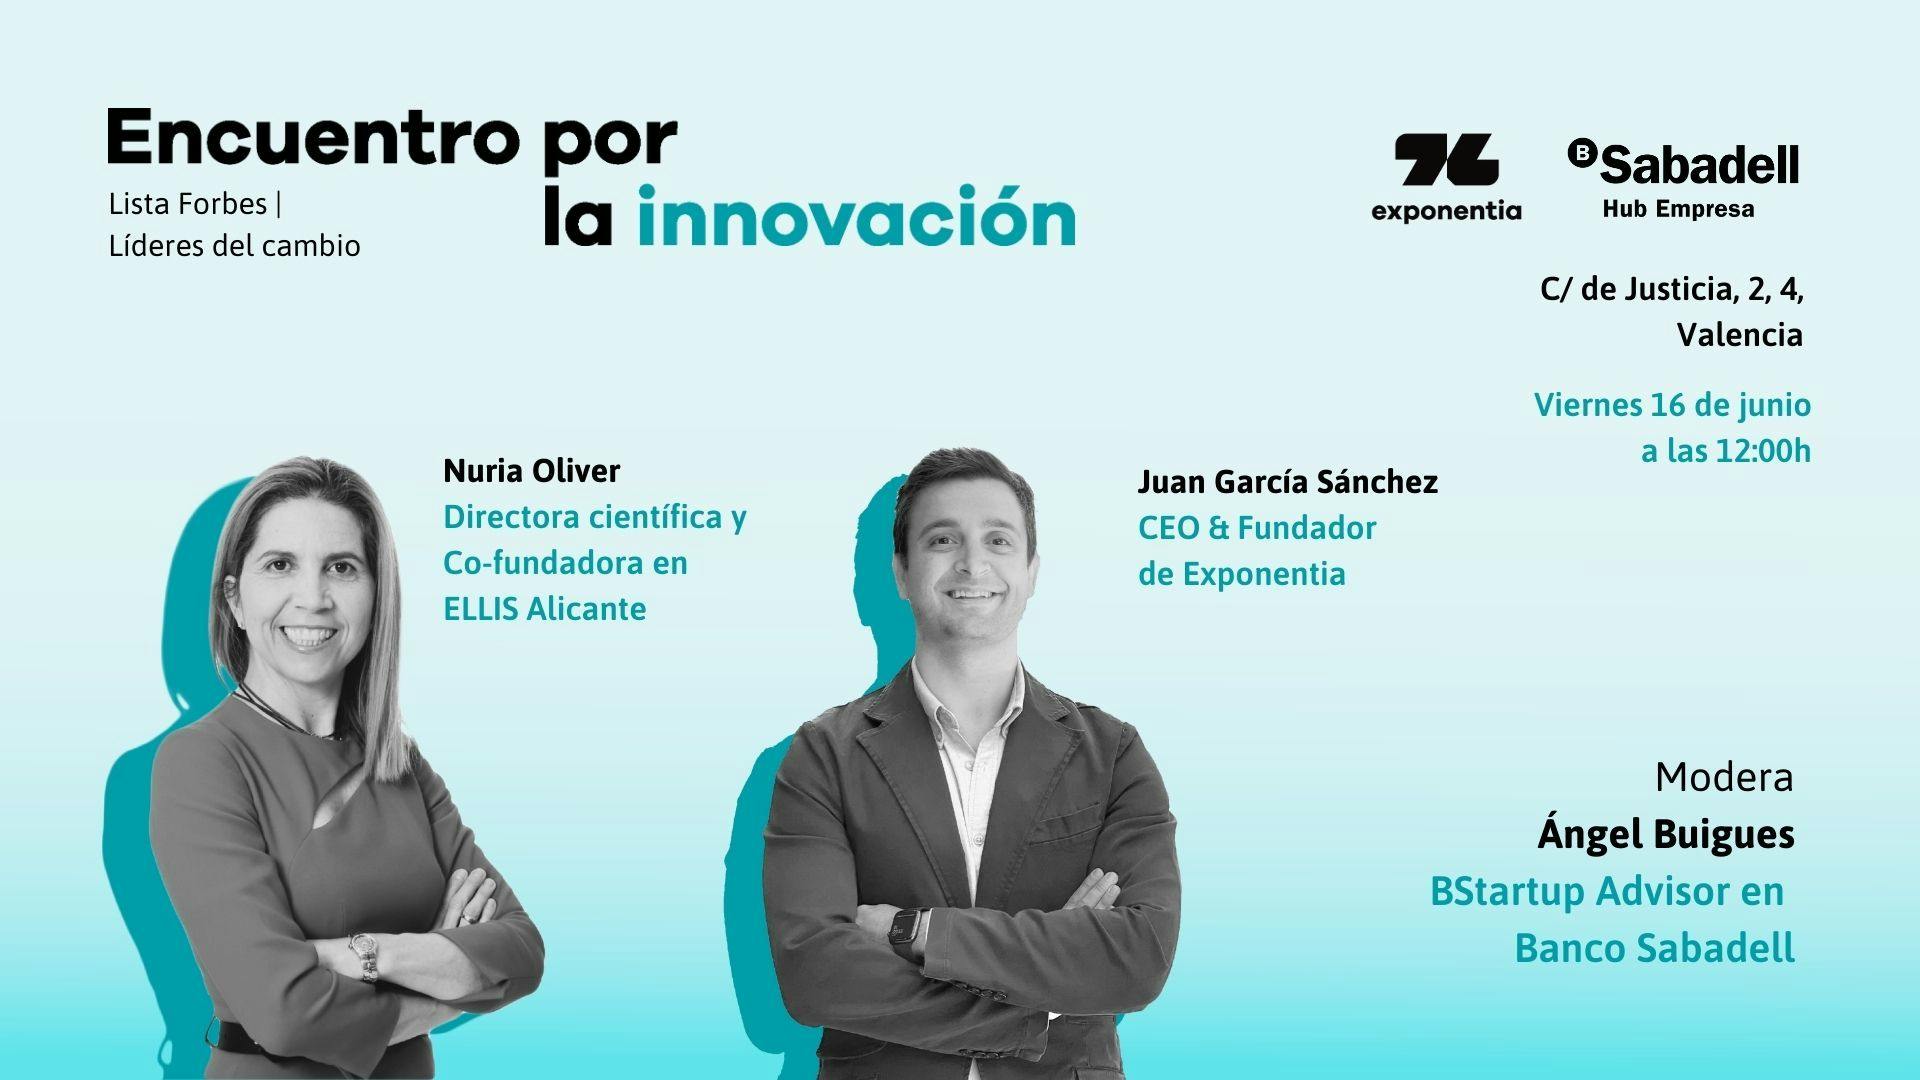 Los líderes valencianos del cambio protagonizan el ‘Encuentro por la Innovación’ en el Hub Empresa de Valencia.